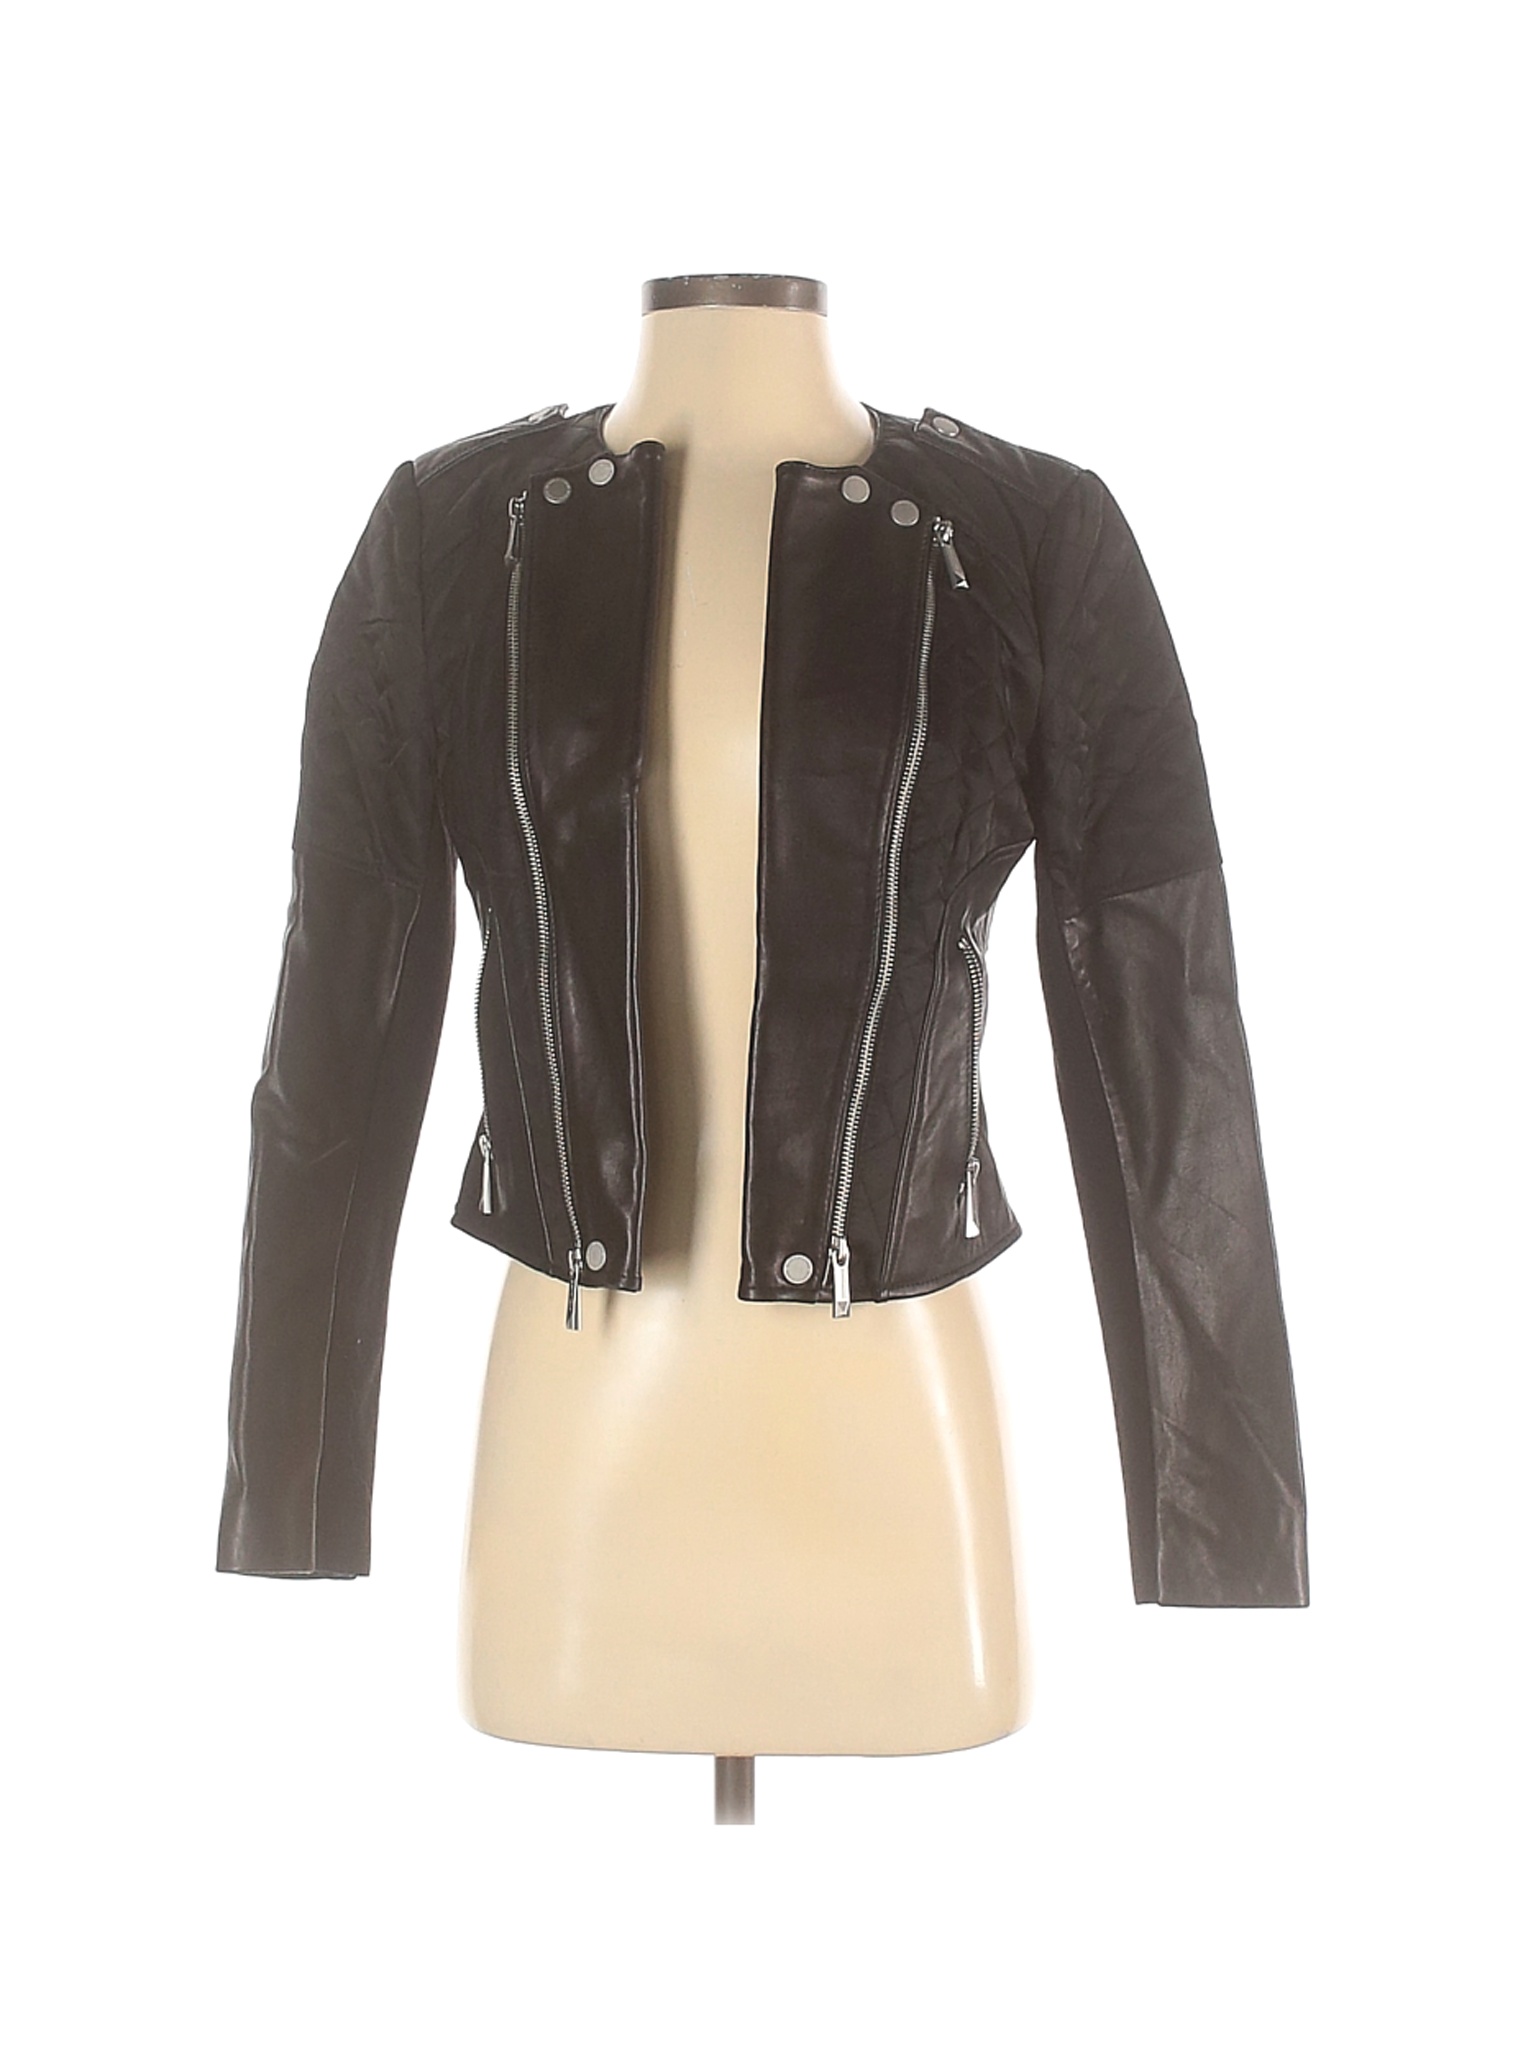 BCBGMAXAZRIA Women Black Leather Jacket XS | eBay